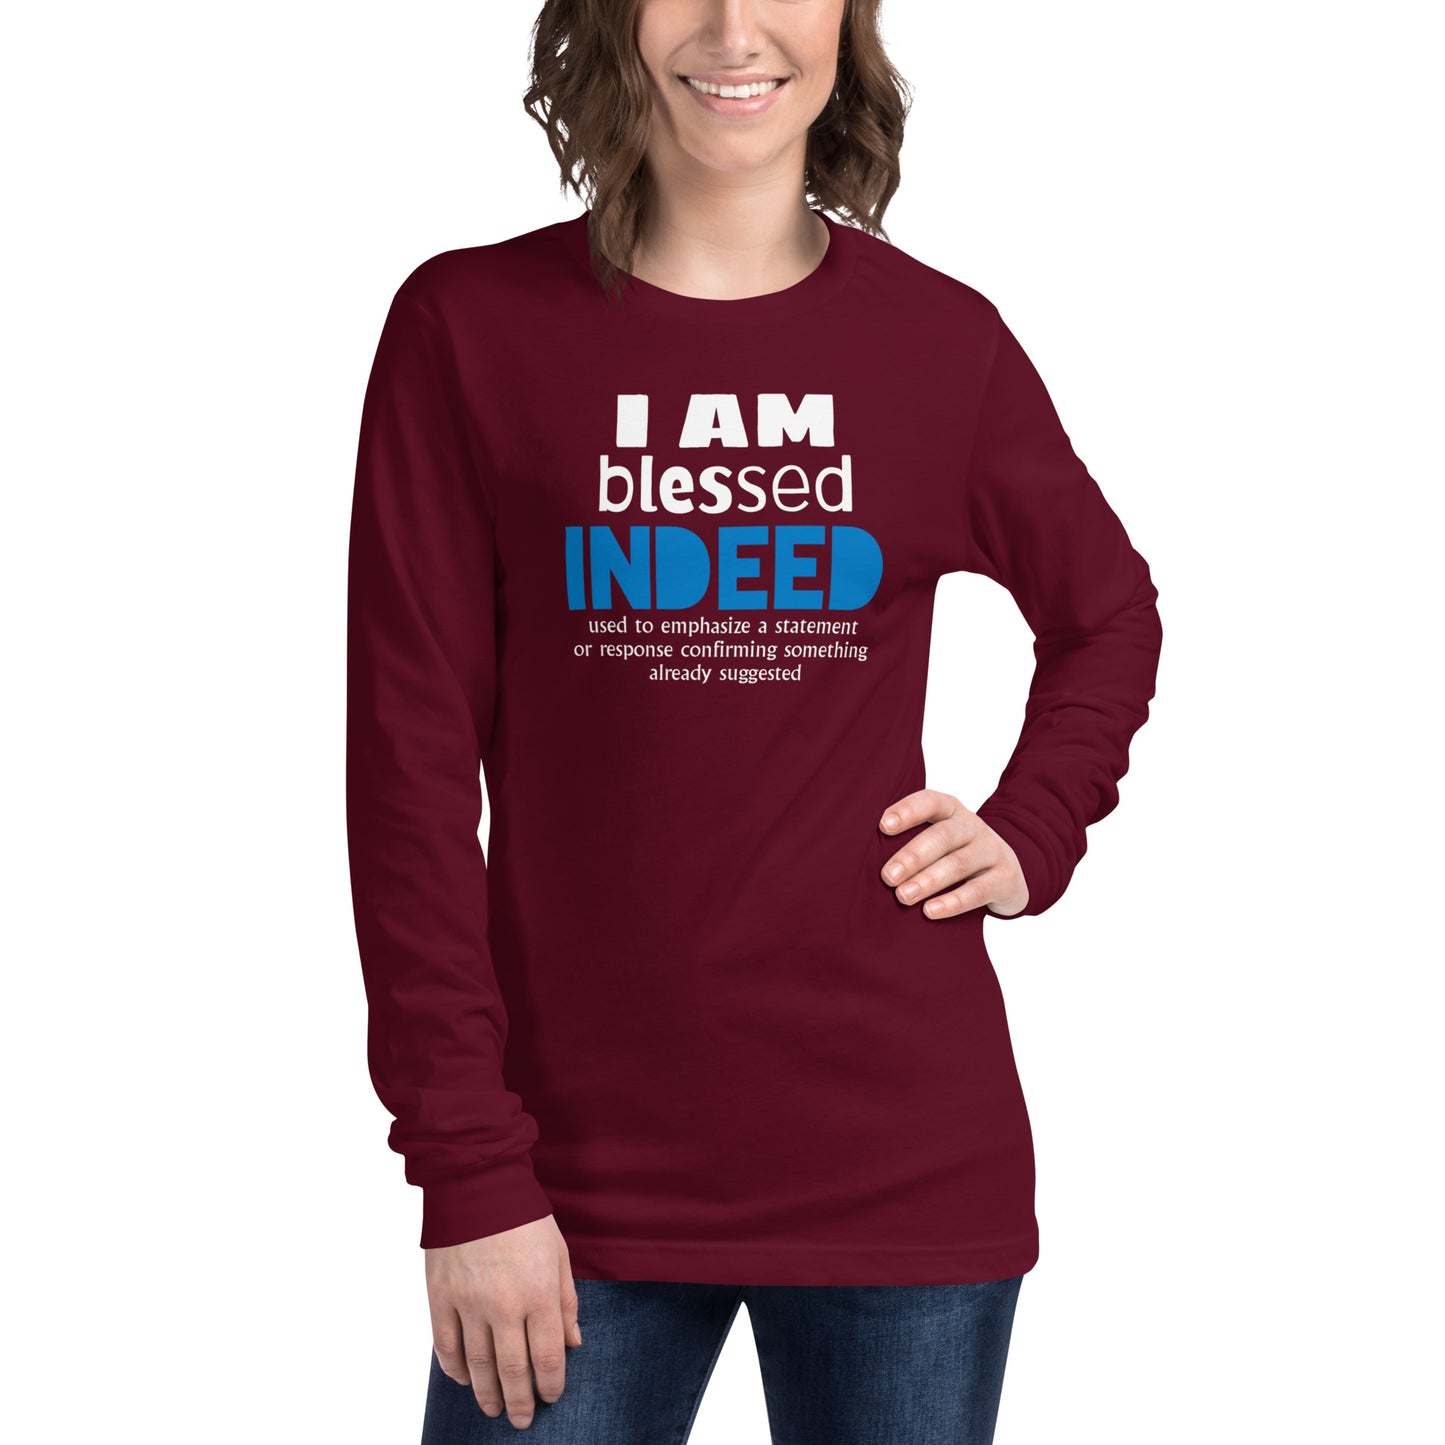 I AM blessed INDEED Long Sleeve Unisex T-Shirt